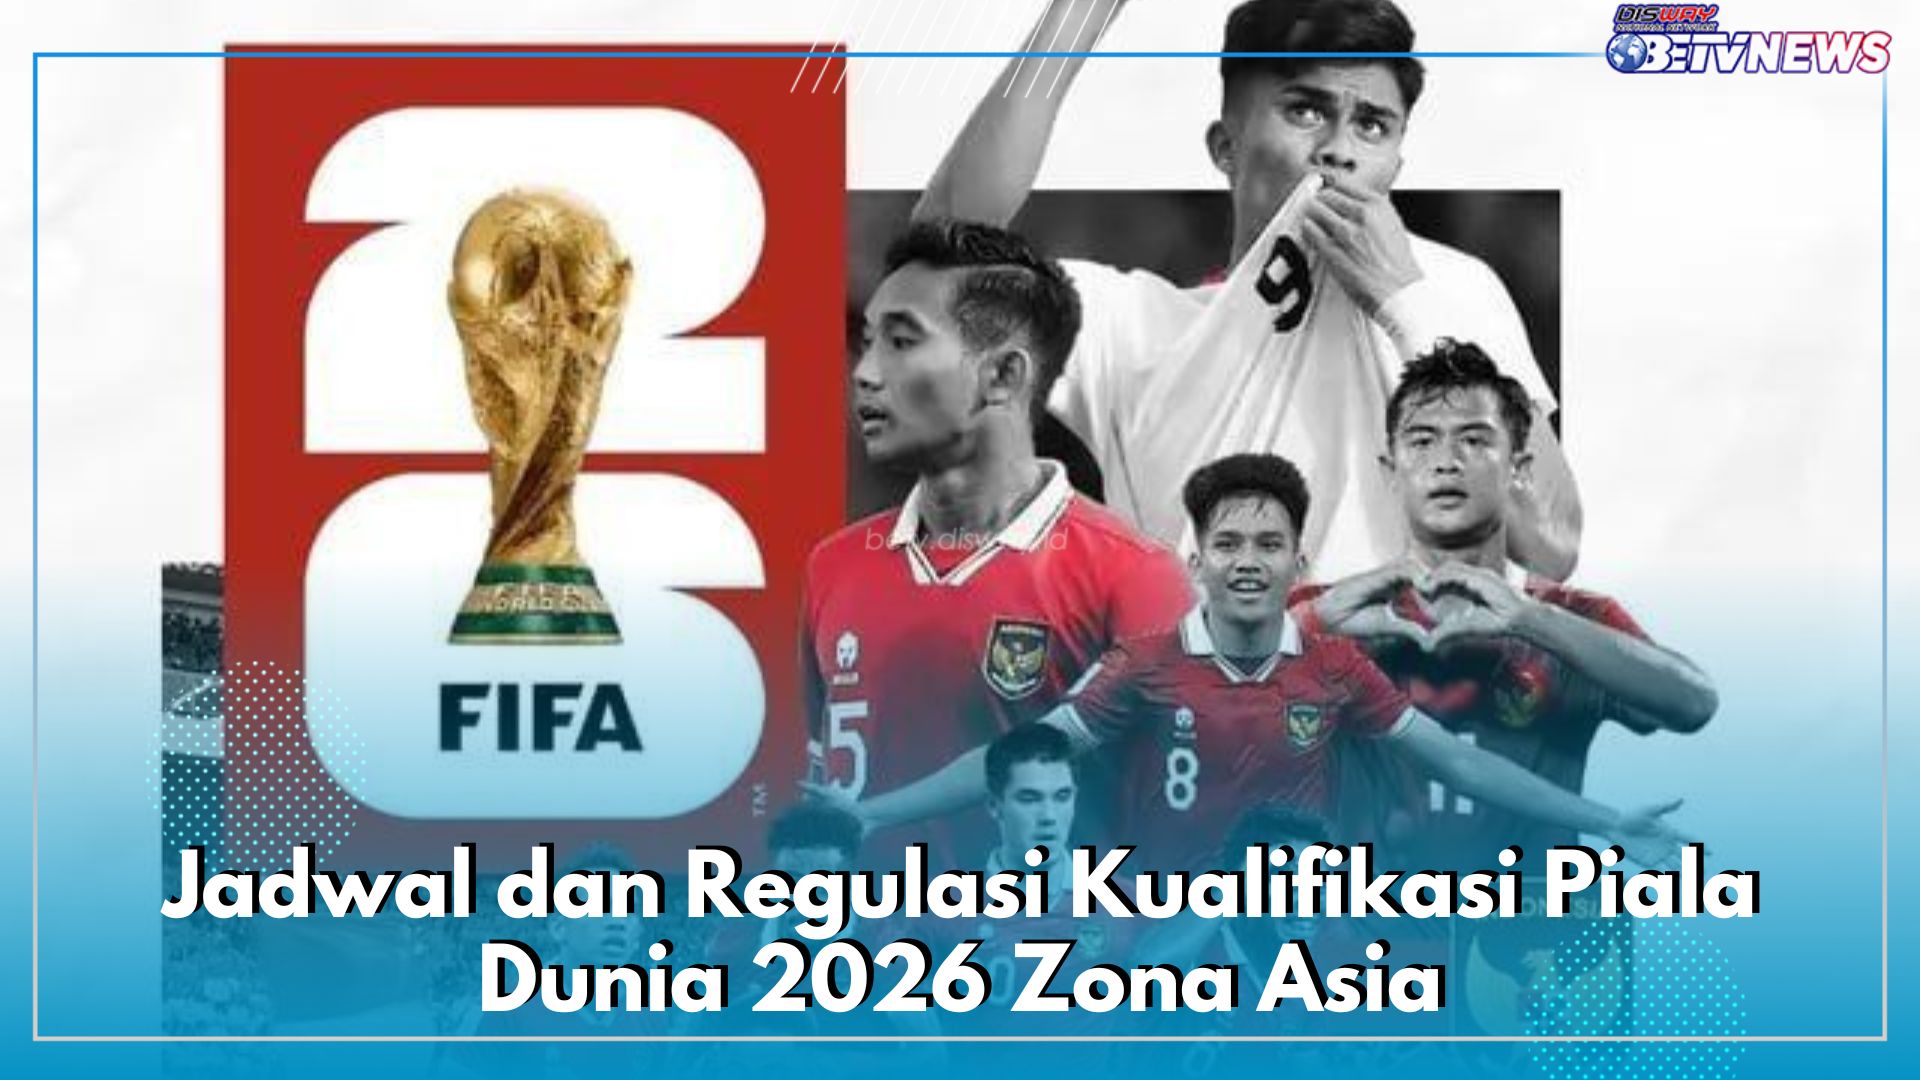 Cek Jadwal Laga Kualifikasi Indonesia vs Irak dan Filipina, Berikut Regulasi Skuad Garuda Agar Lolos Zona Asia